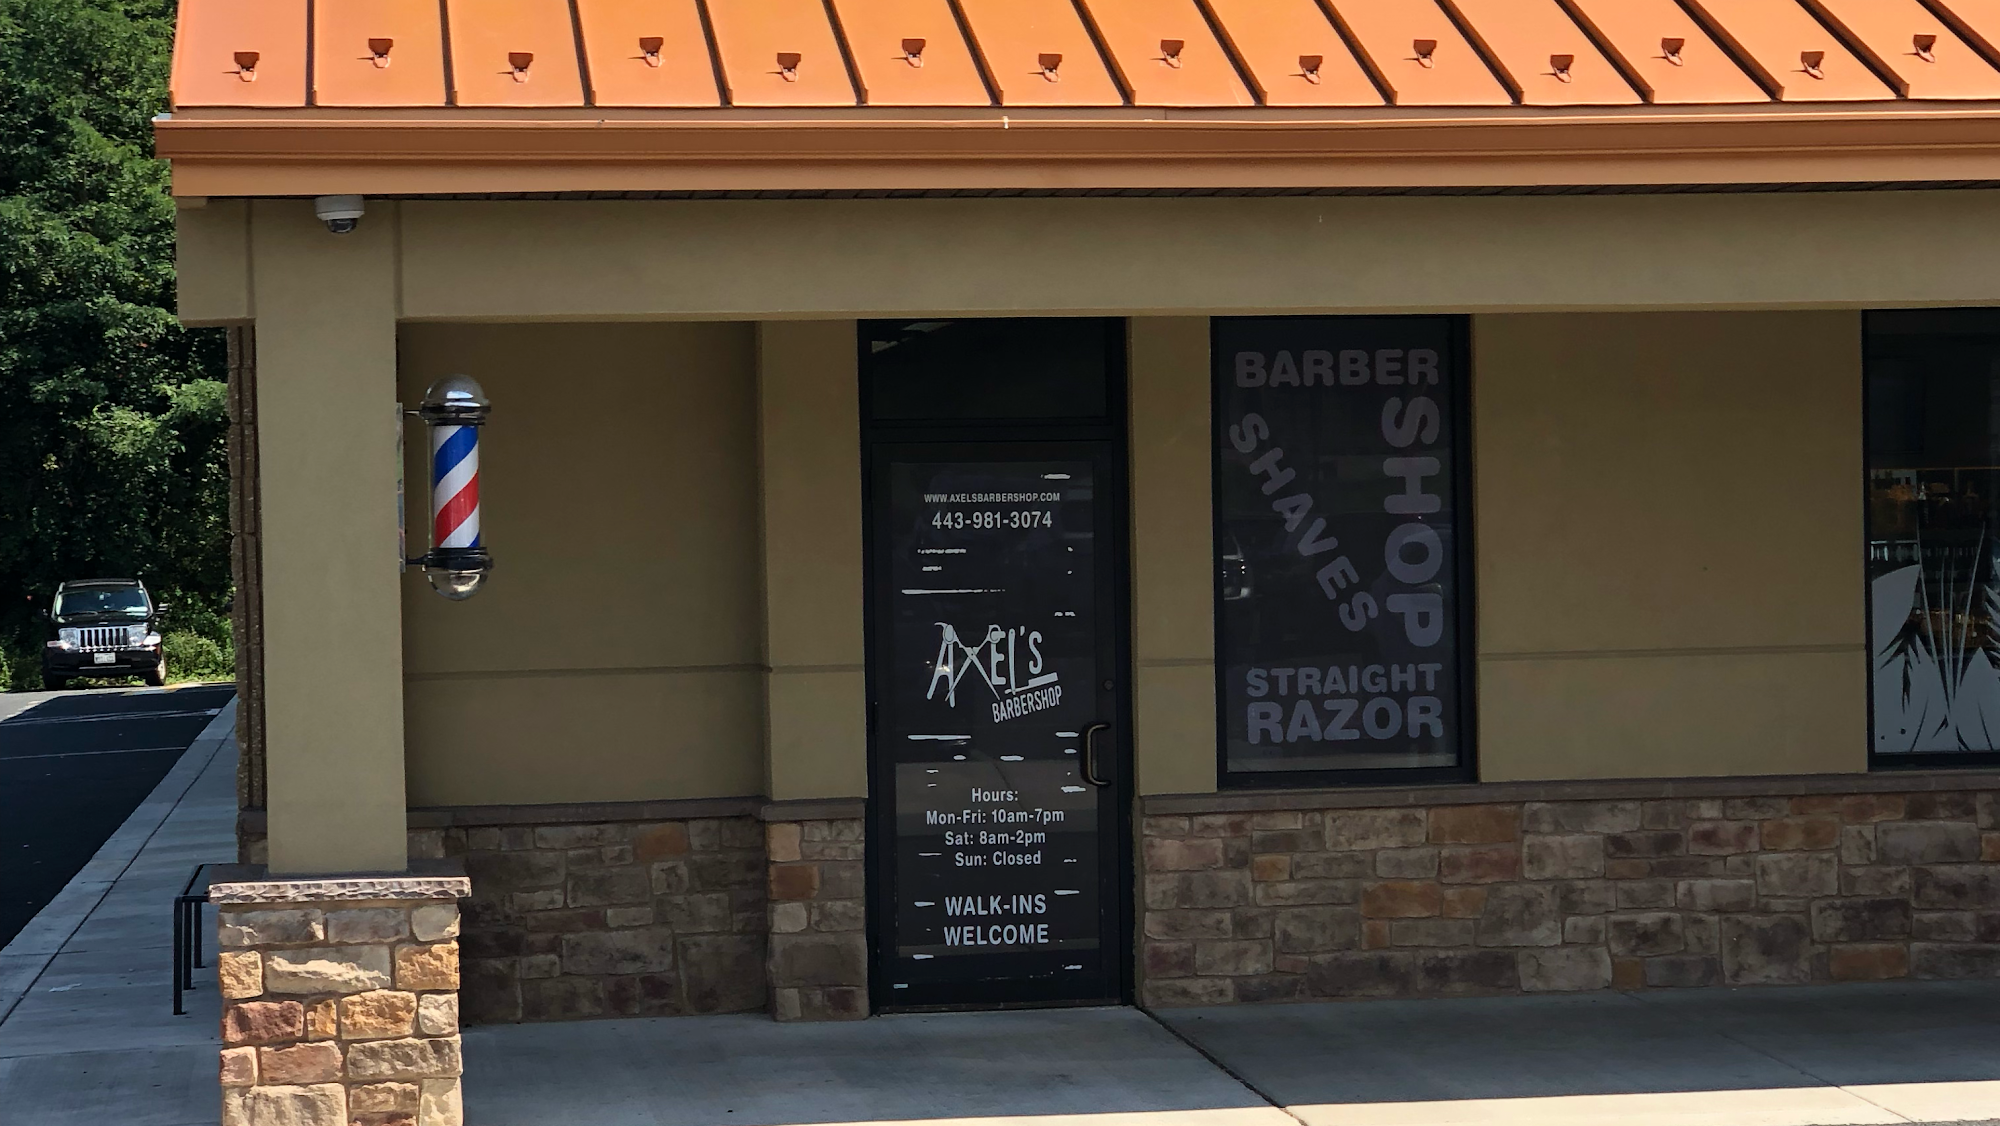 Axels Barbershop